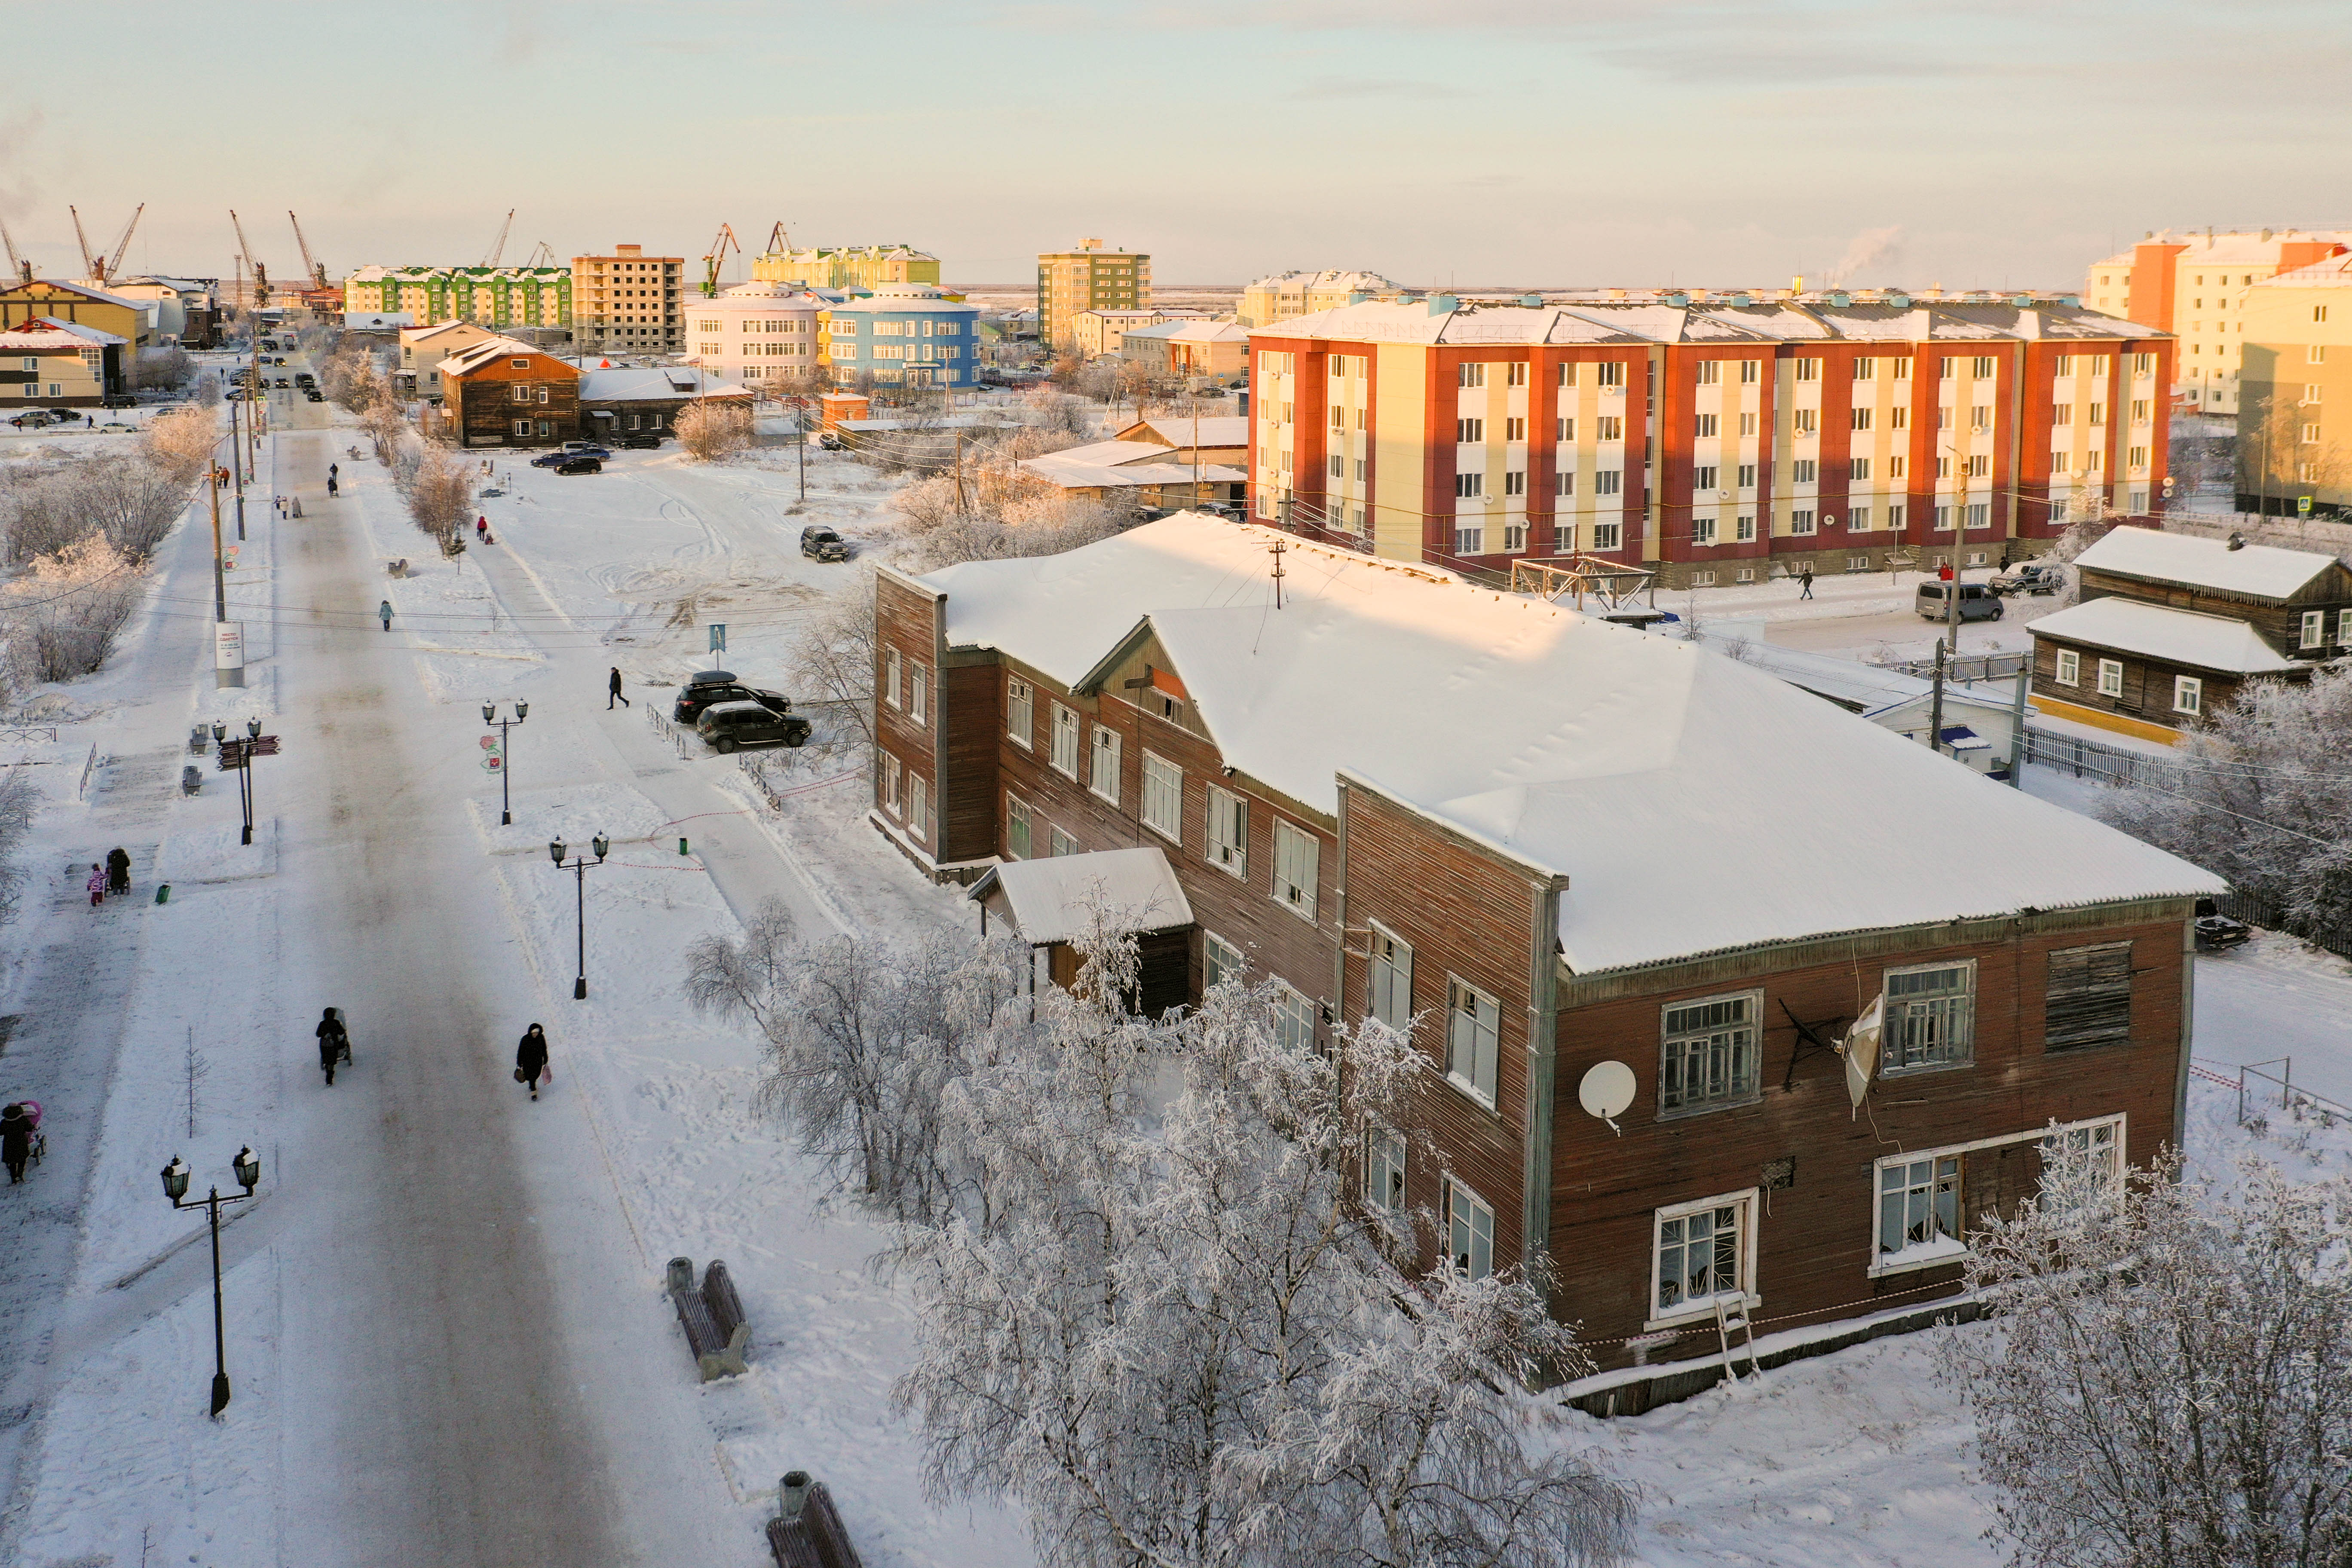 Началась работа над составлением мастер-плана столицы Ненецкого автономного округа – Нарьян-Мара